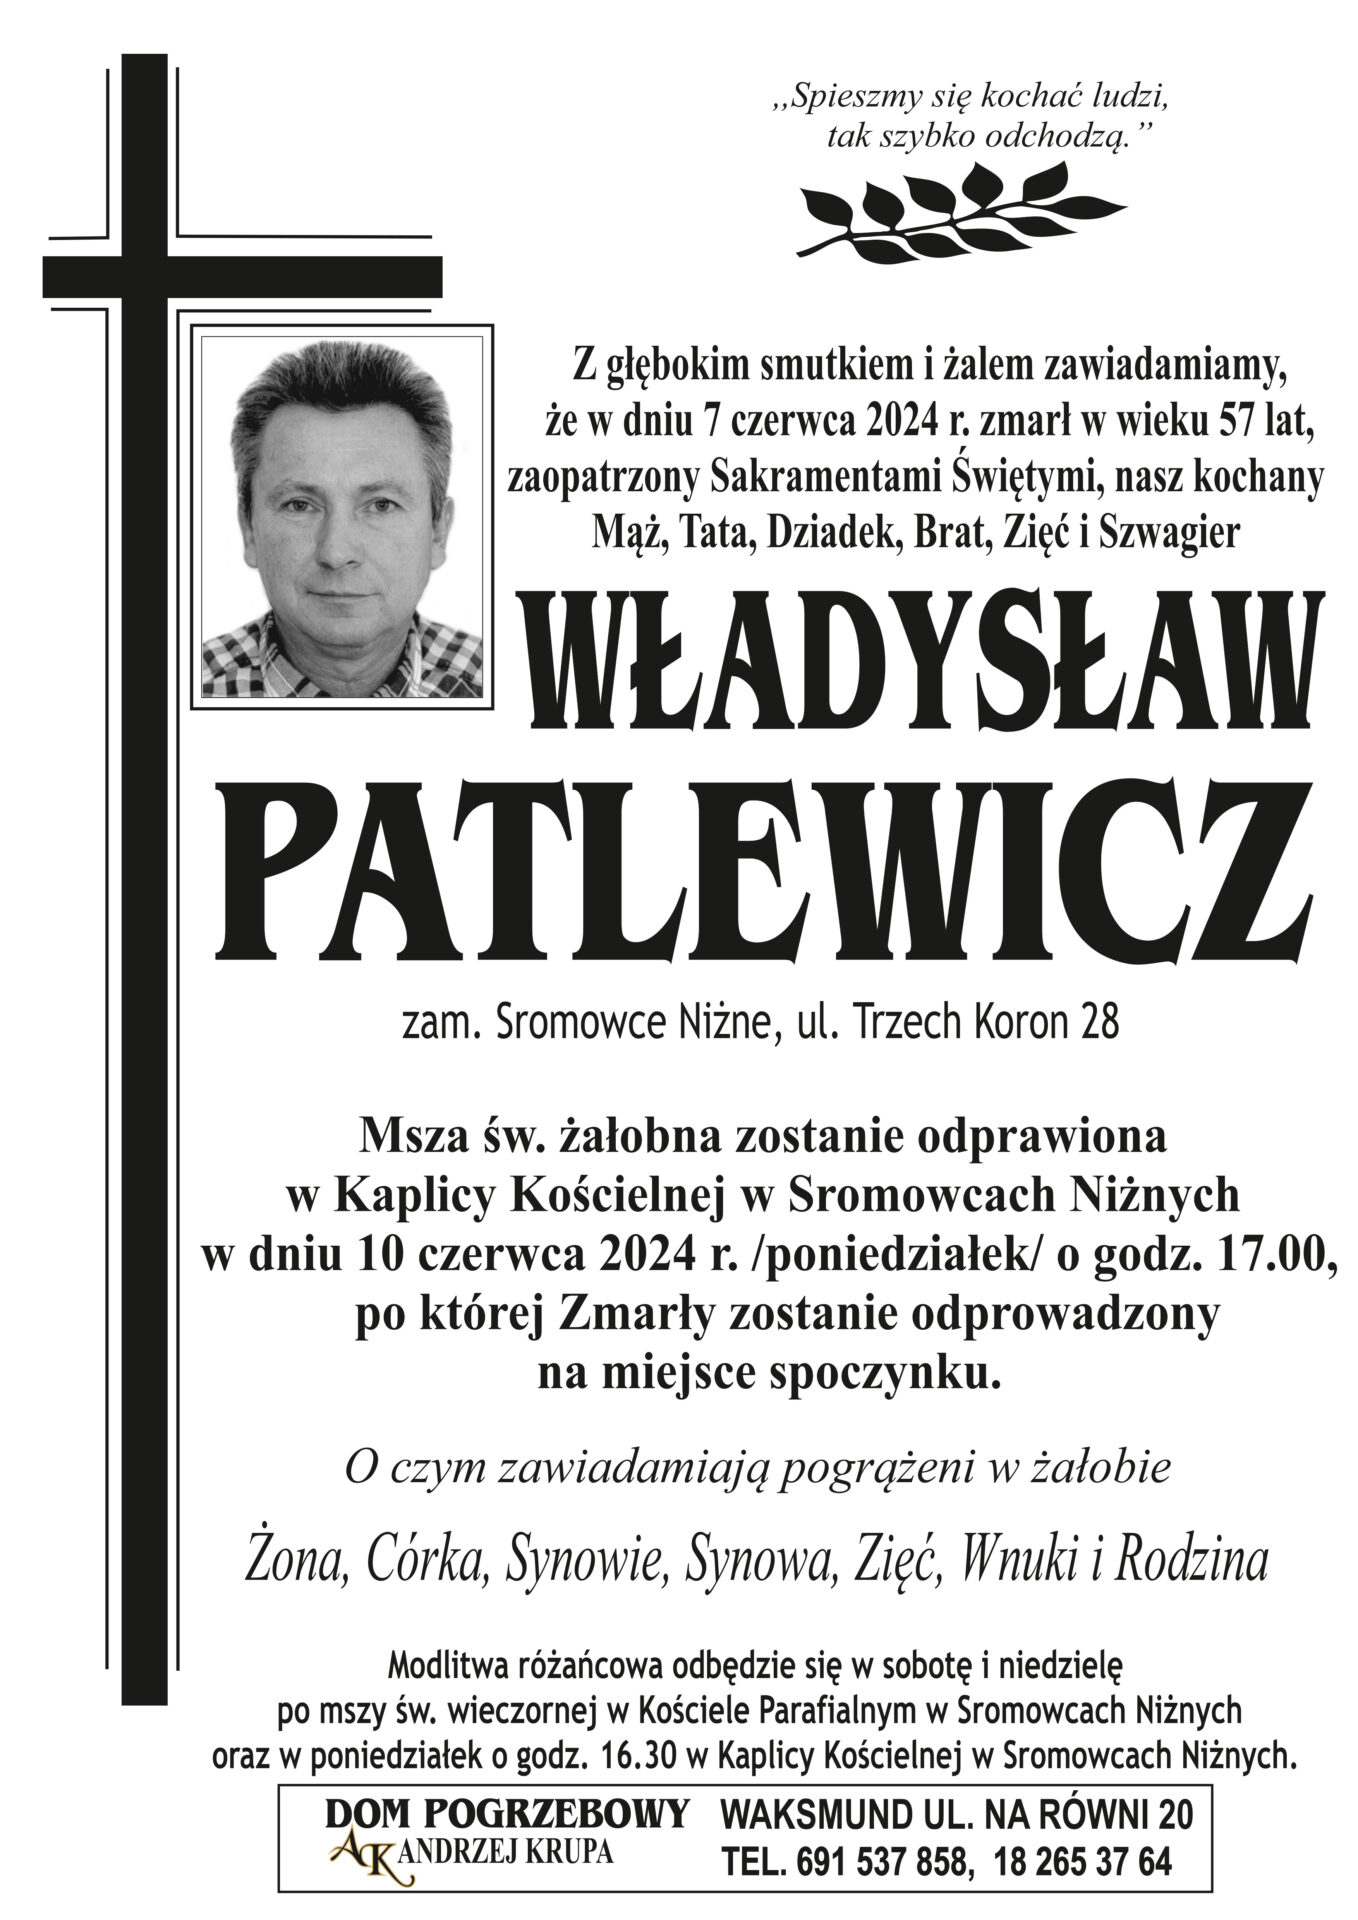 Władysław Patlewicz